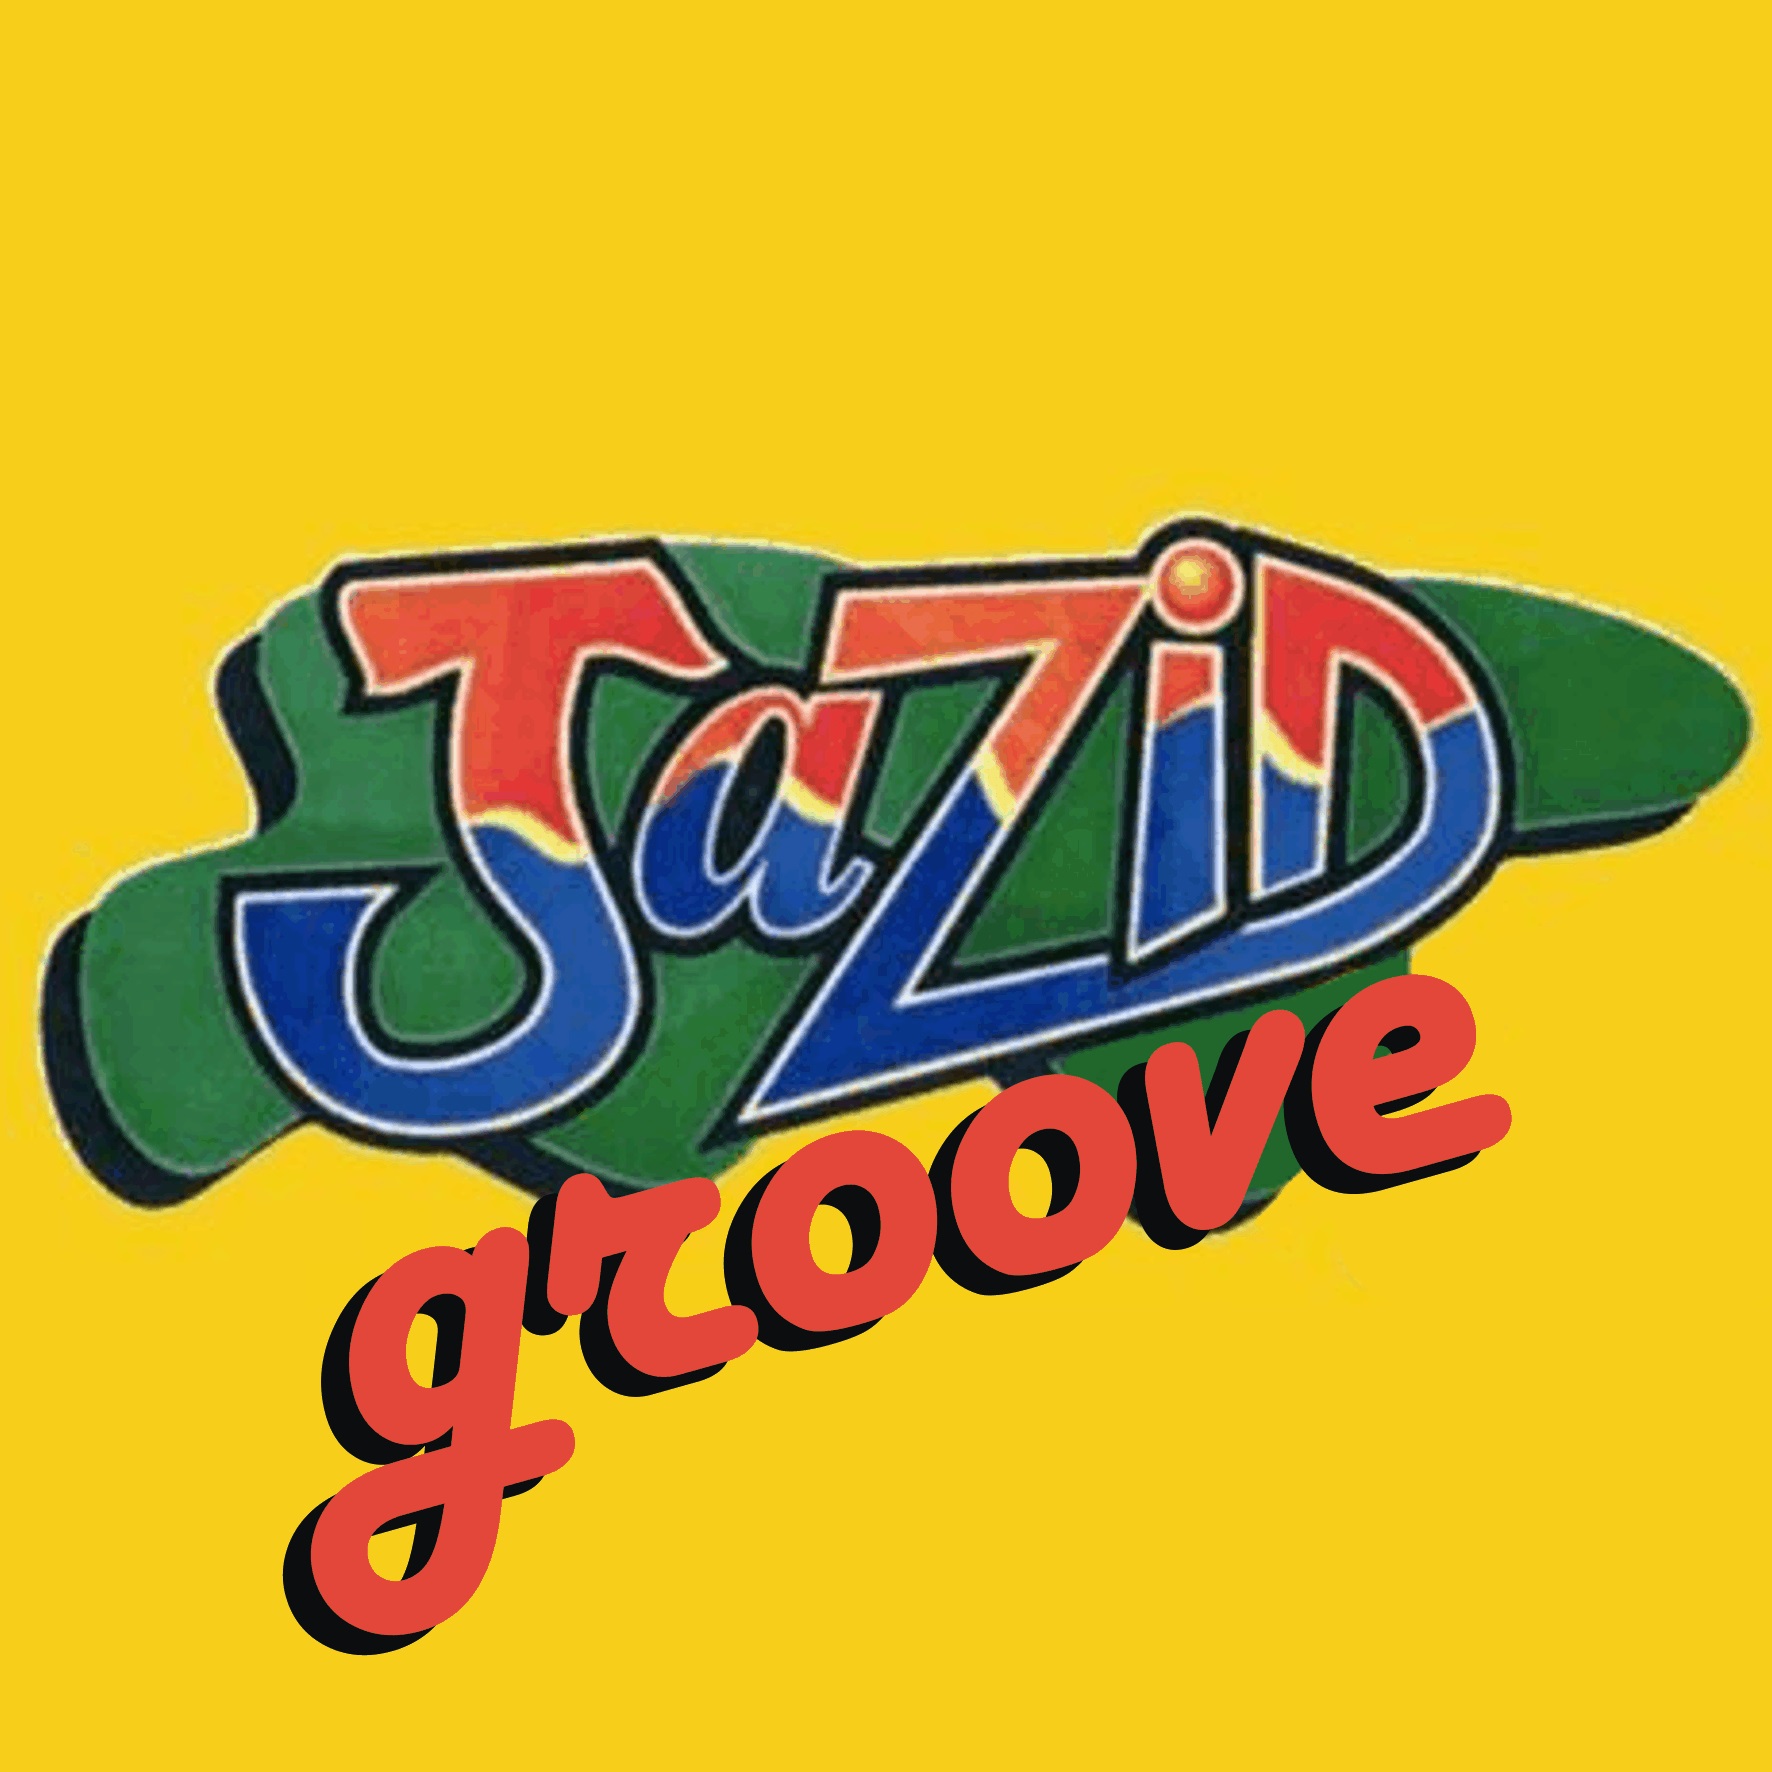 Jazid Groove 38